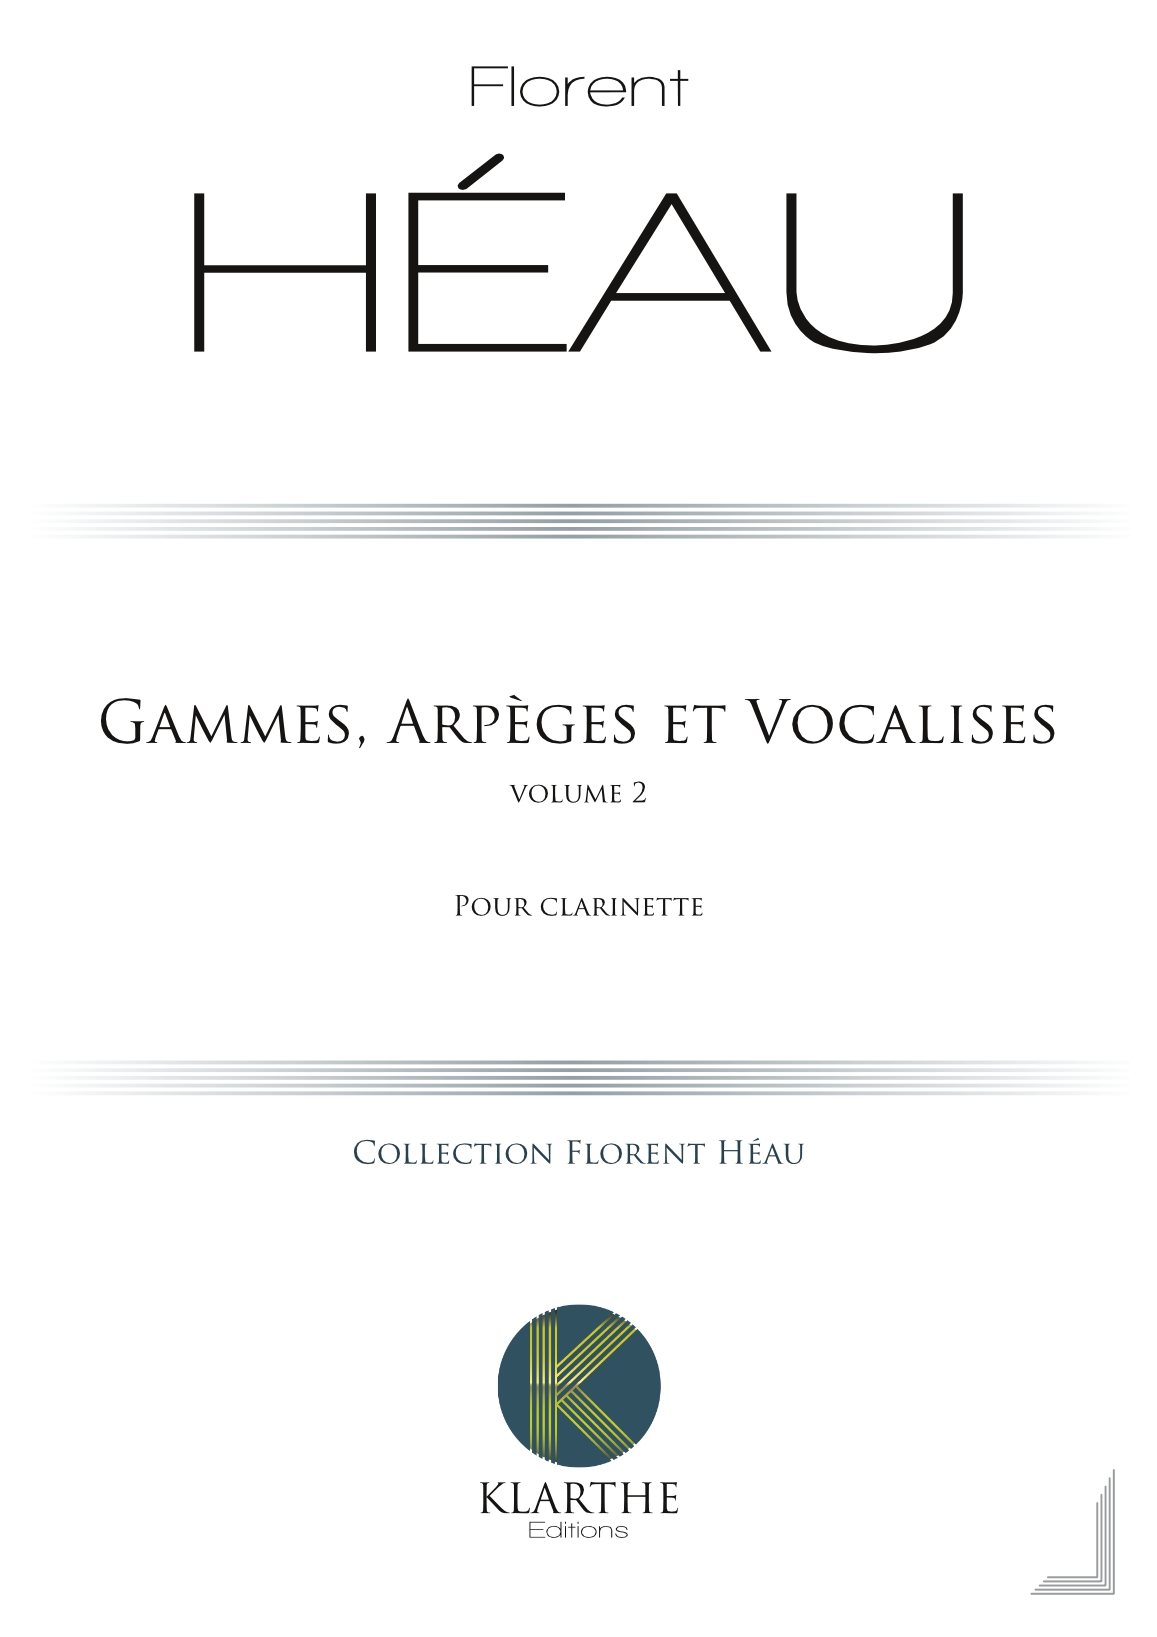 Gammes, Arpges et Vocalises Vol 2 (HEAU FLORENT)